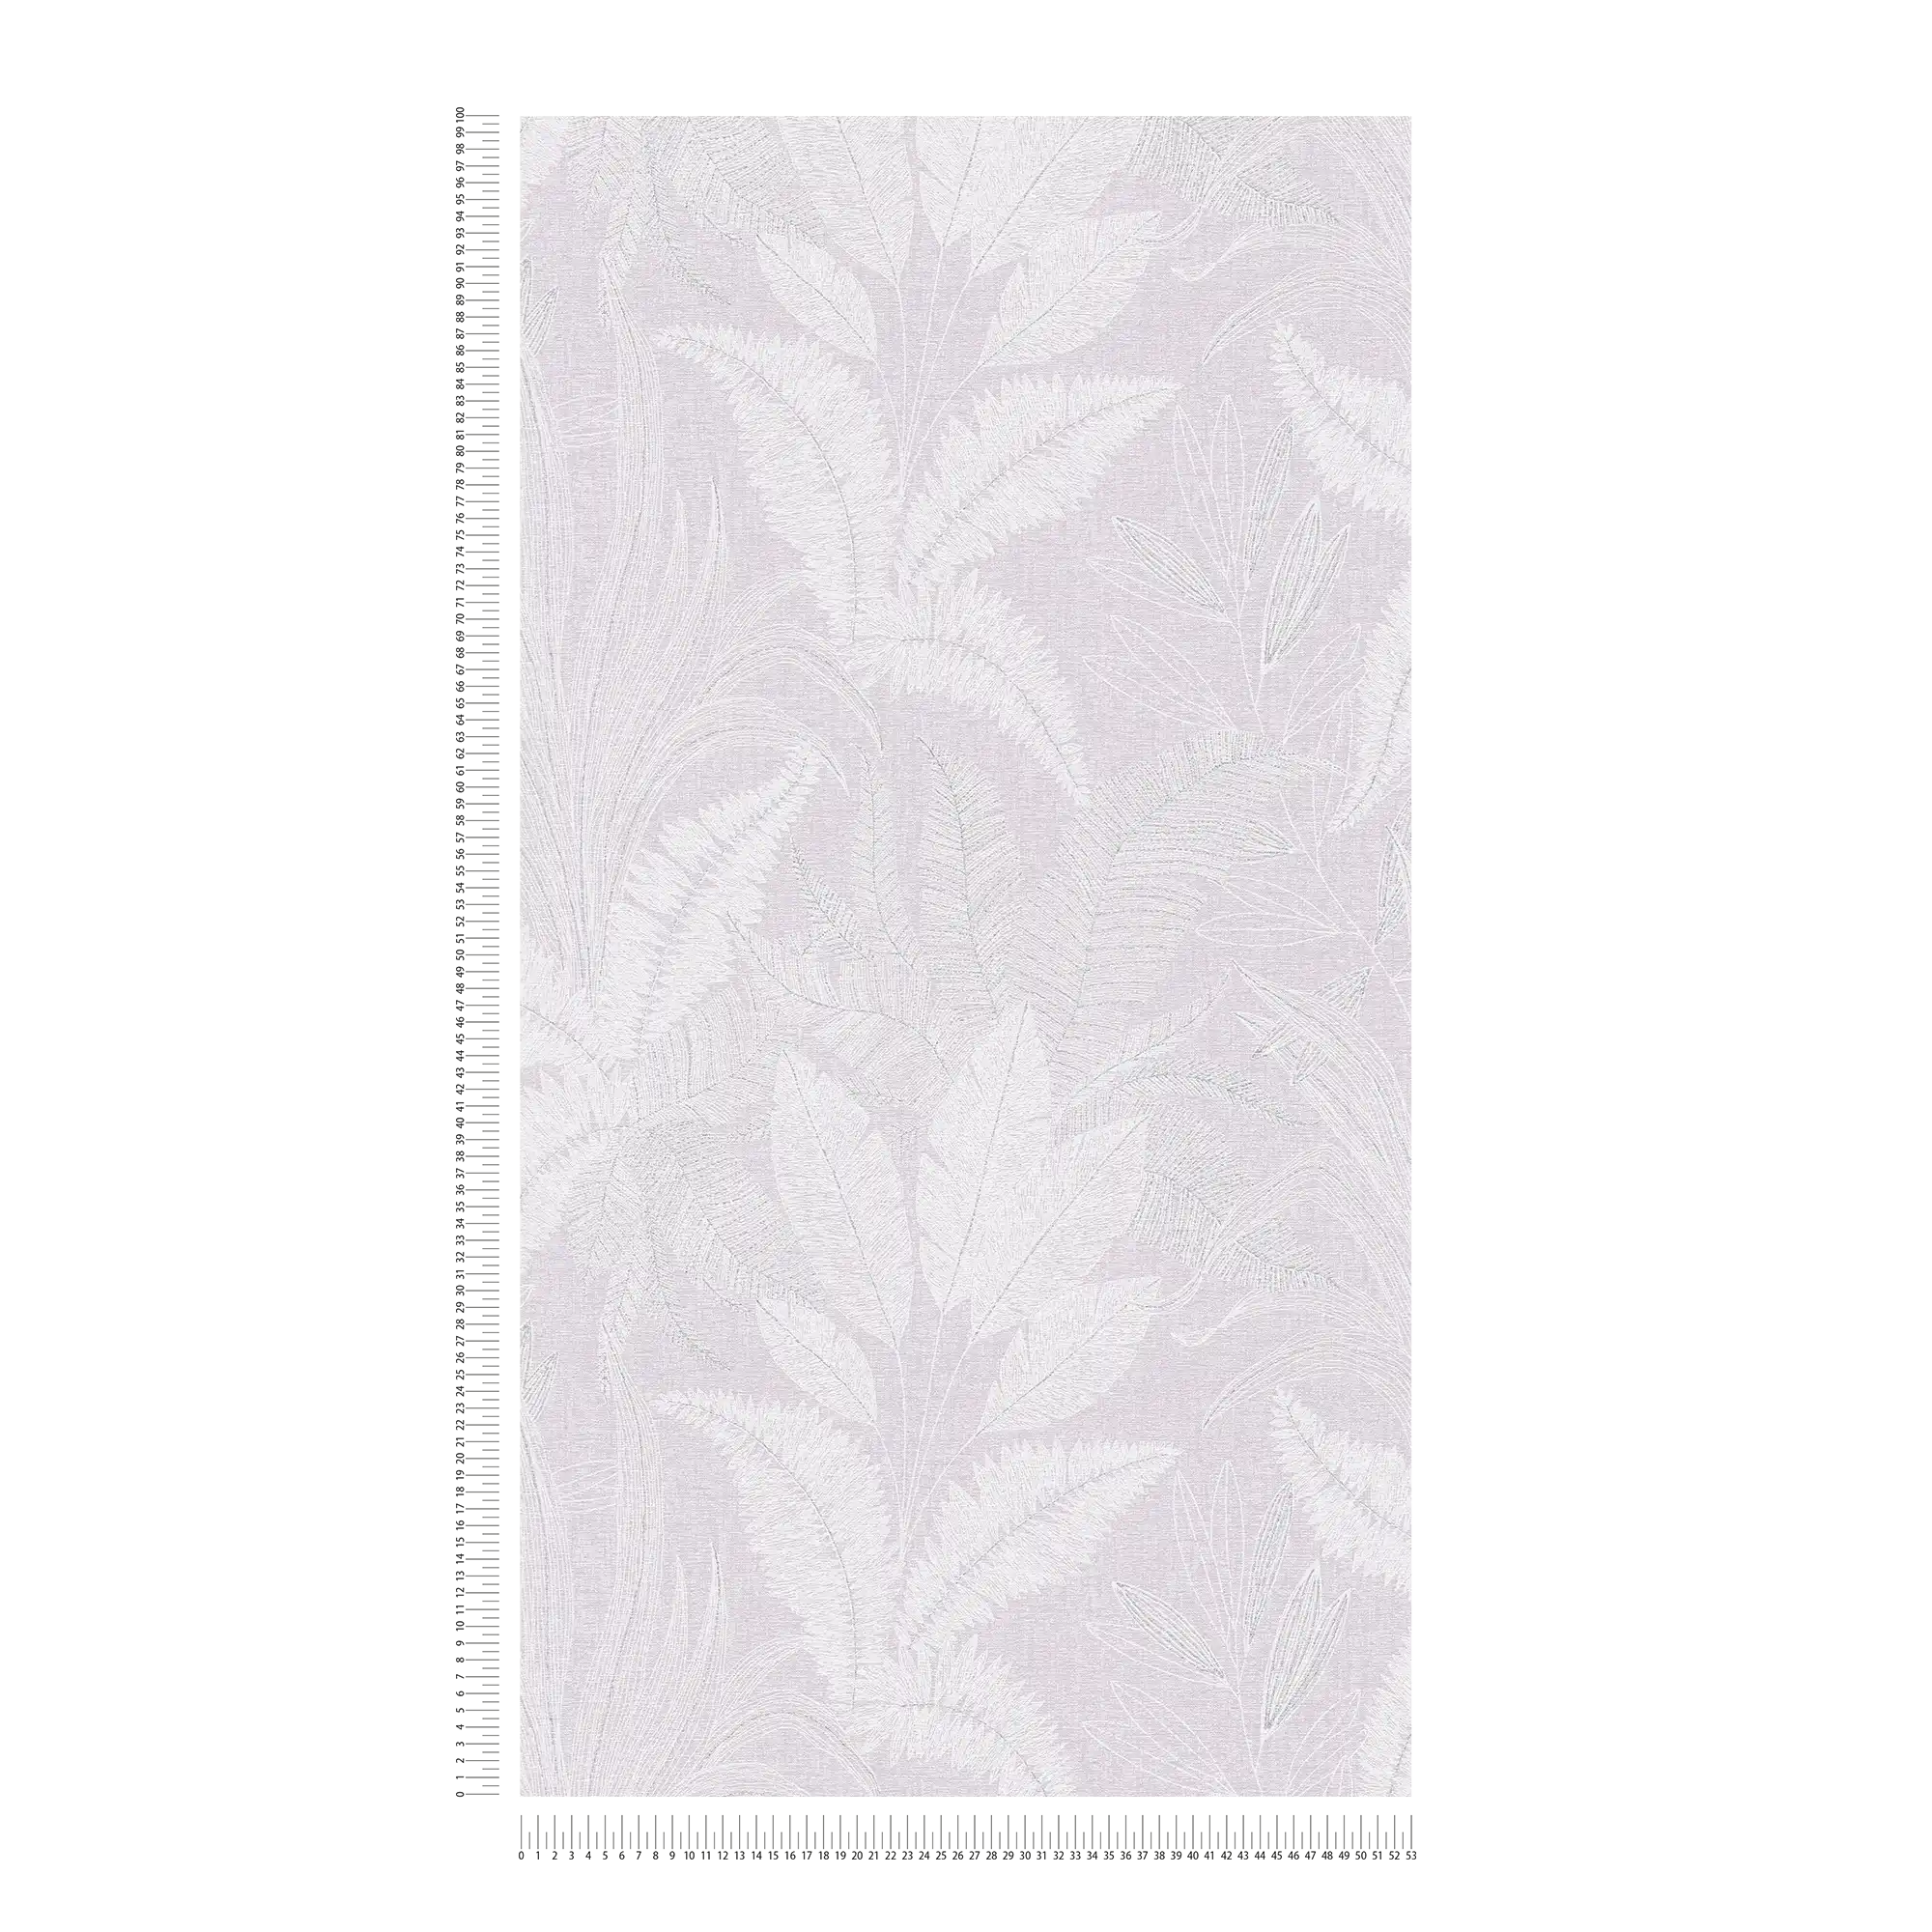             Papel pintado no tejido con motivo de hojas grandes ligeramente texturizado - violeta, blanco, gris
        